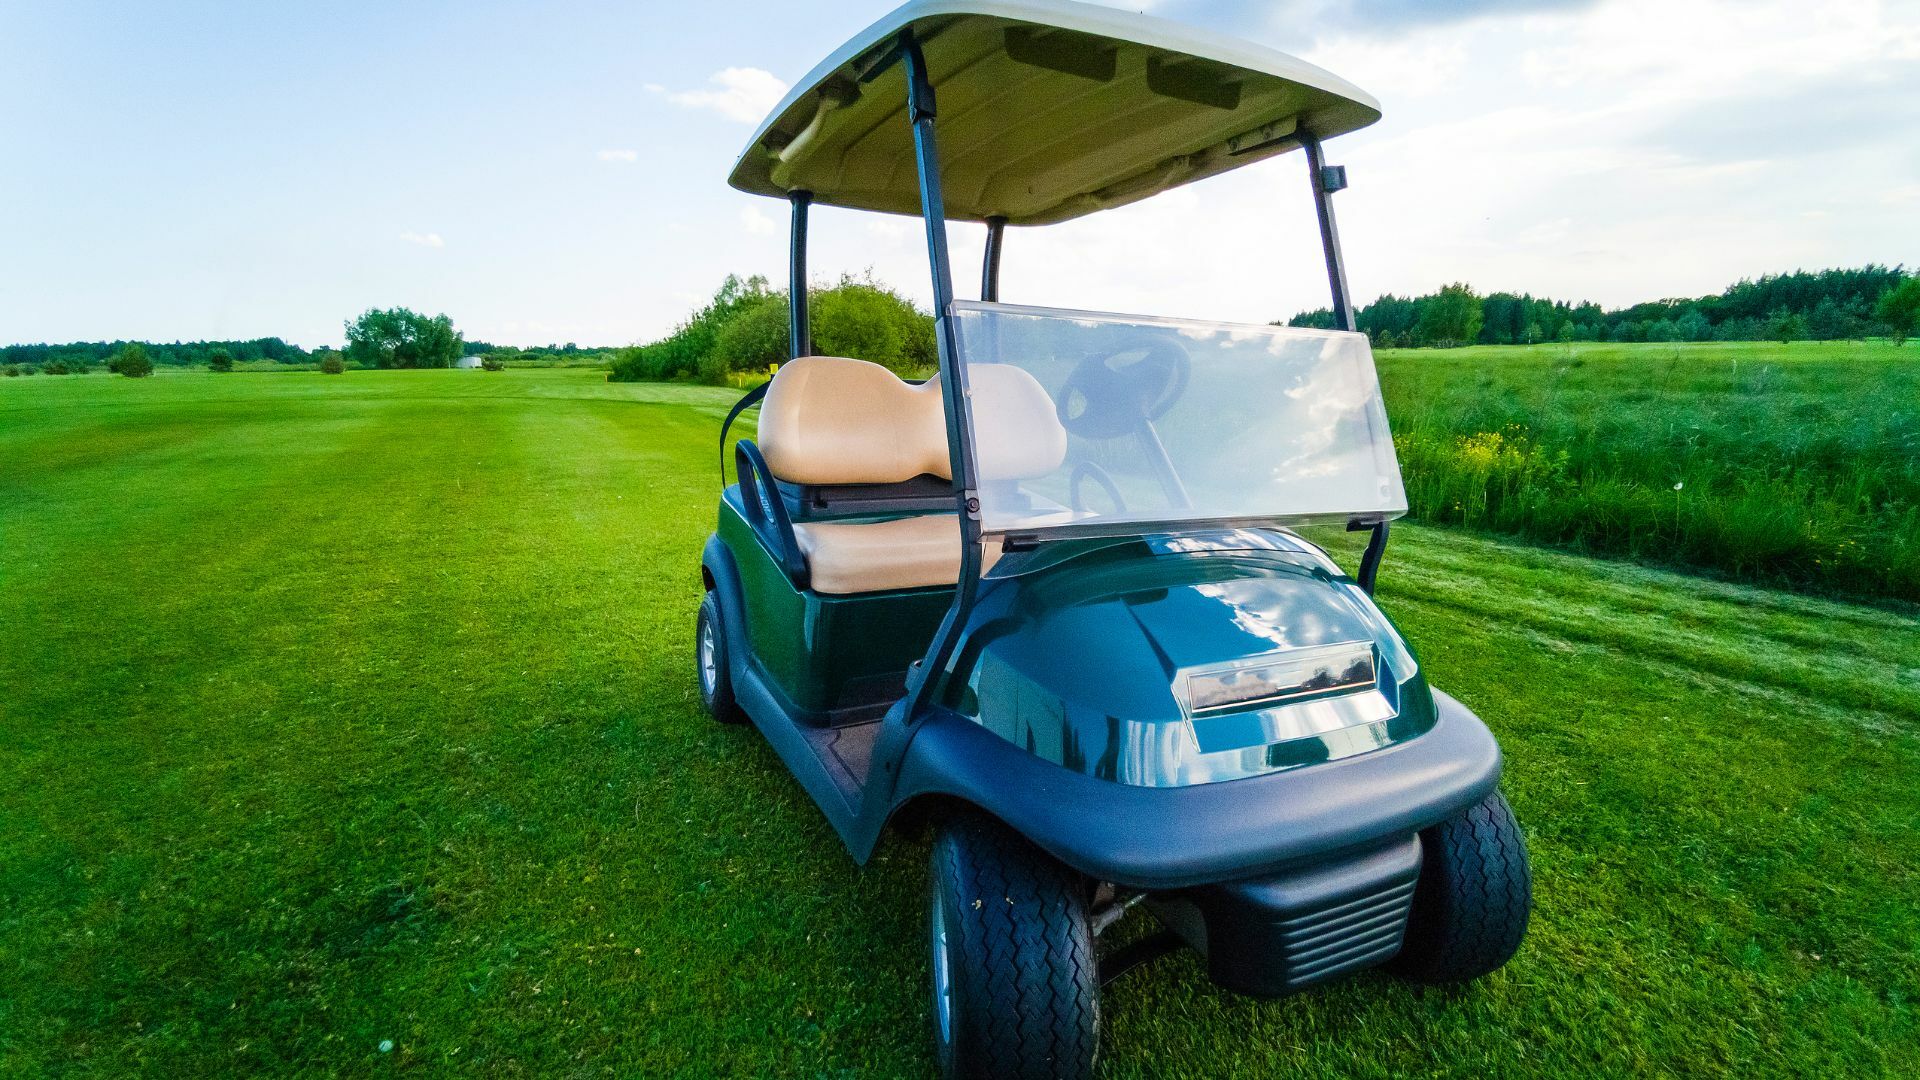 Lithium Golf Cart Batteries Offer Longer Range